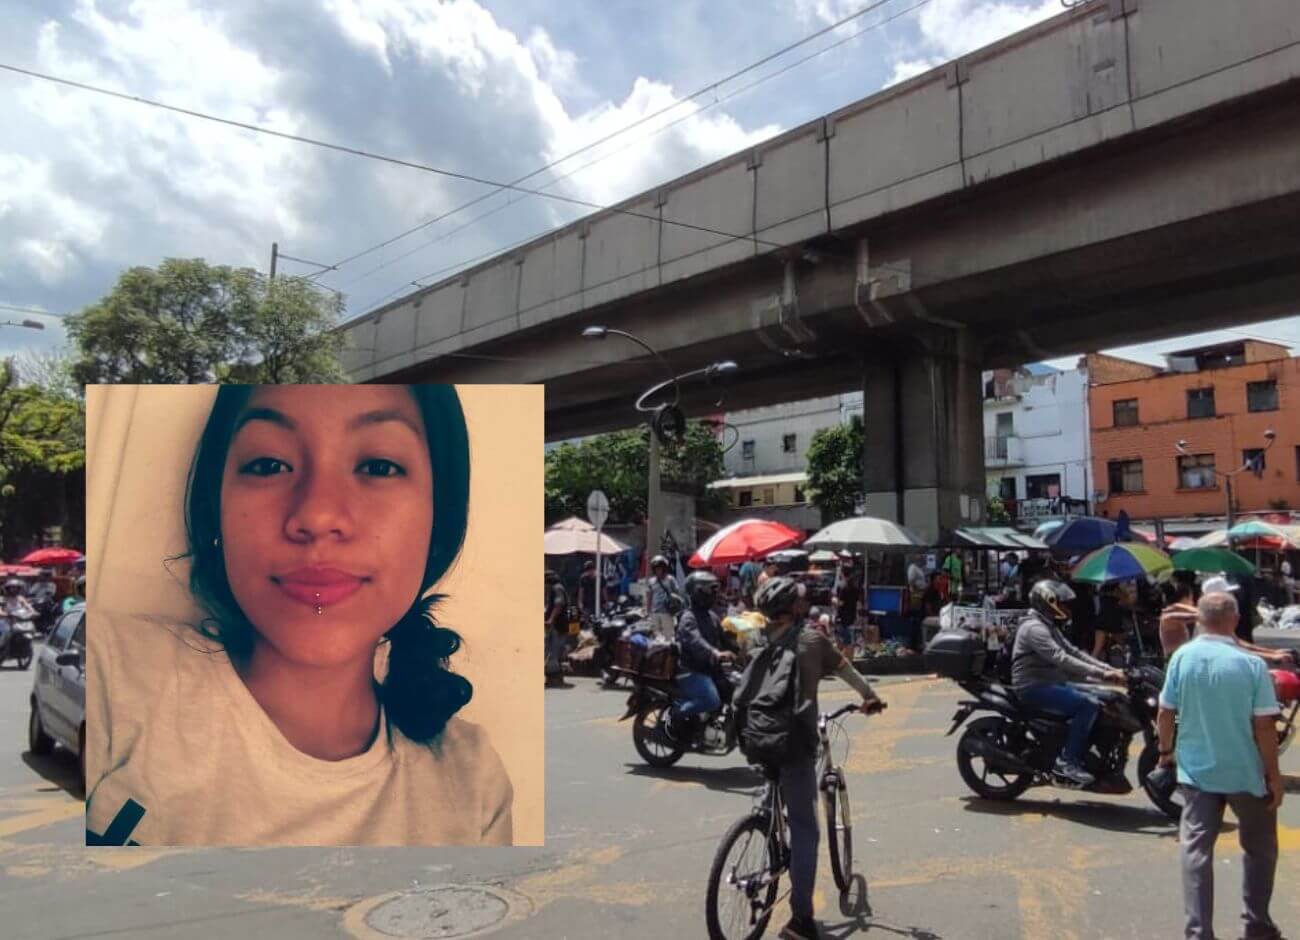 Los celos cobraron la vida de Juanita en una riña ocurrida en pleno centro de Medellín